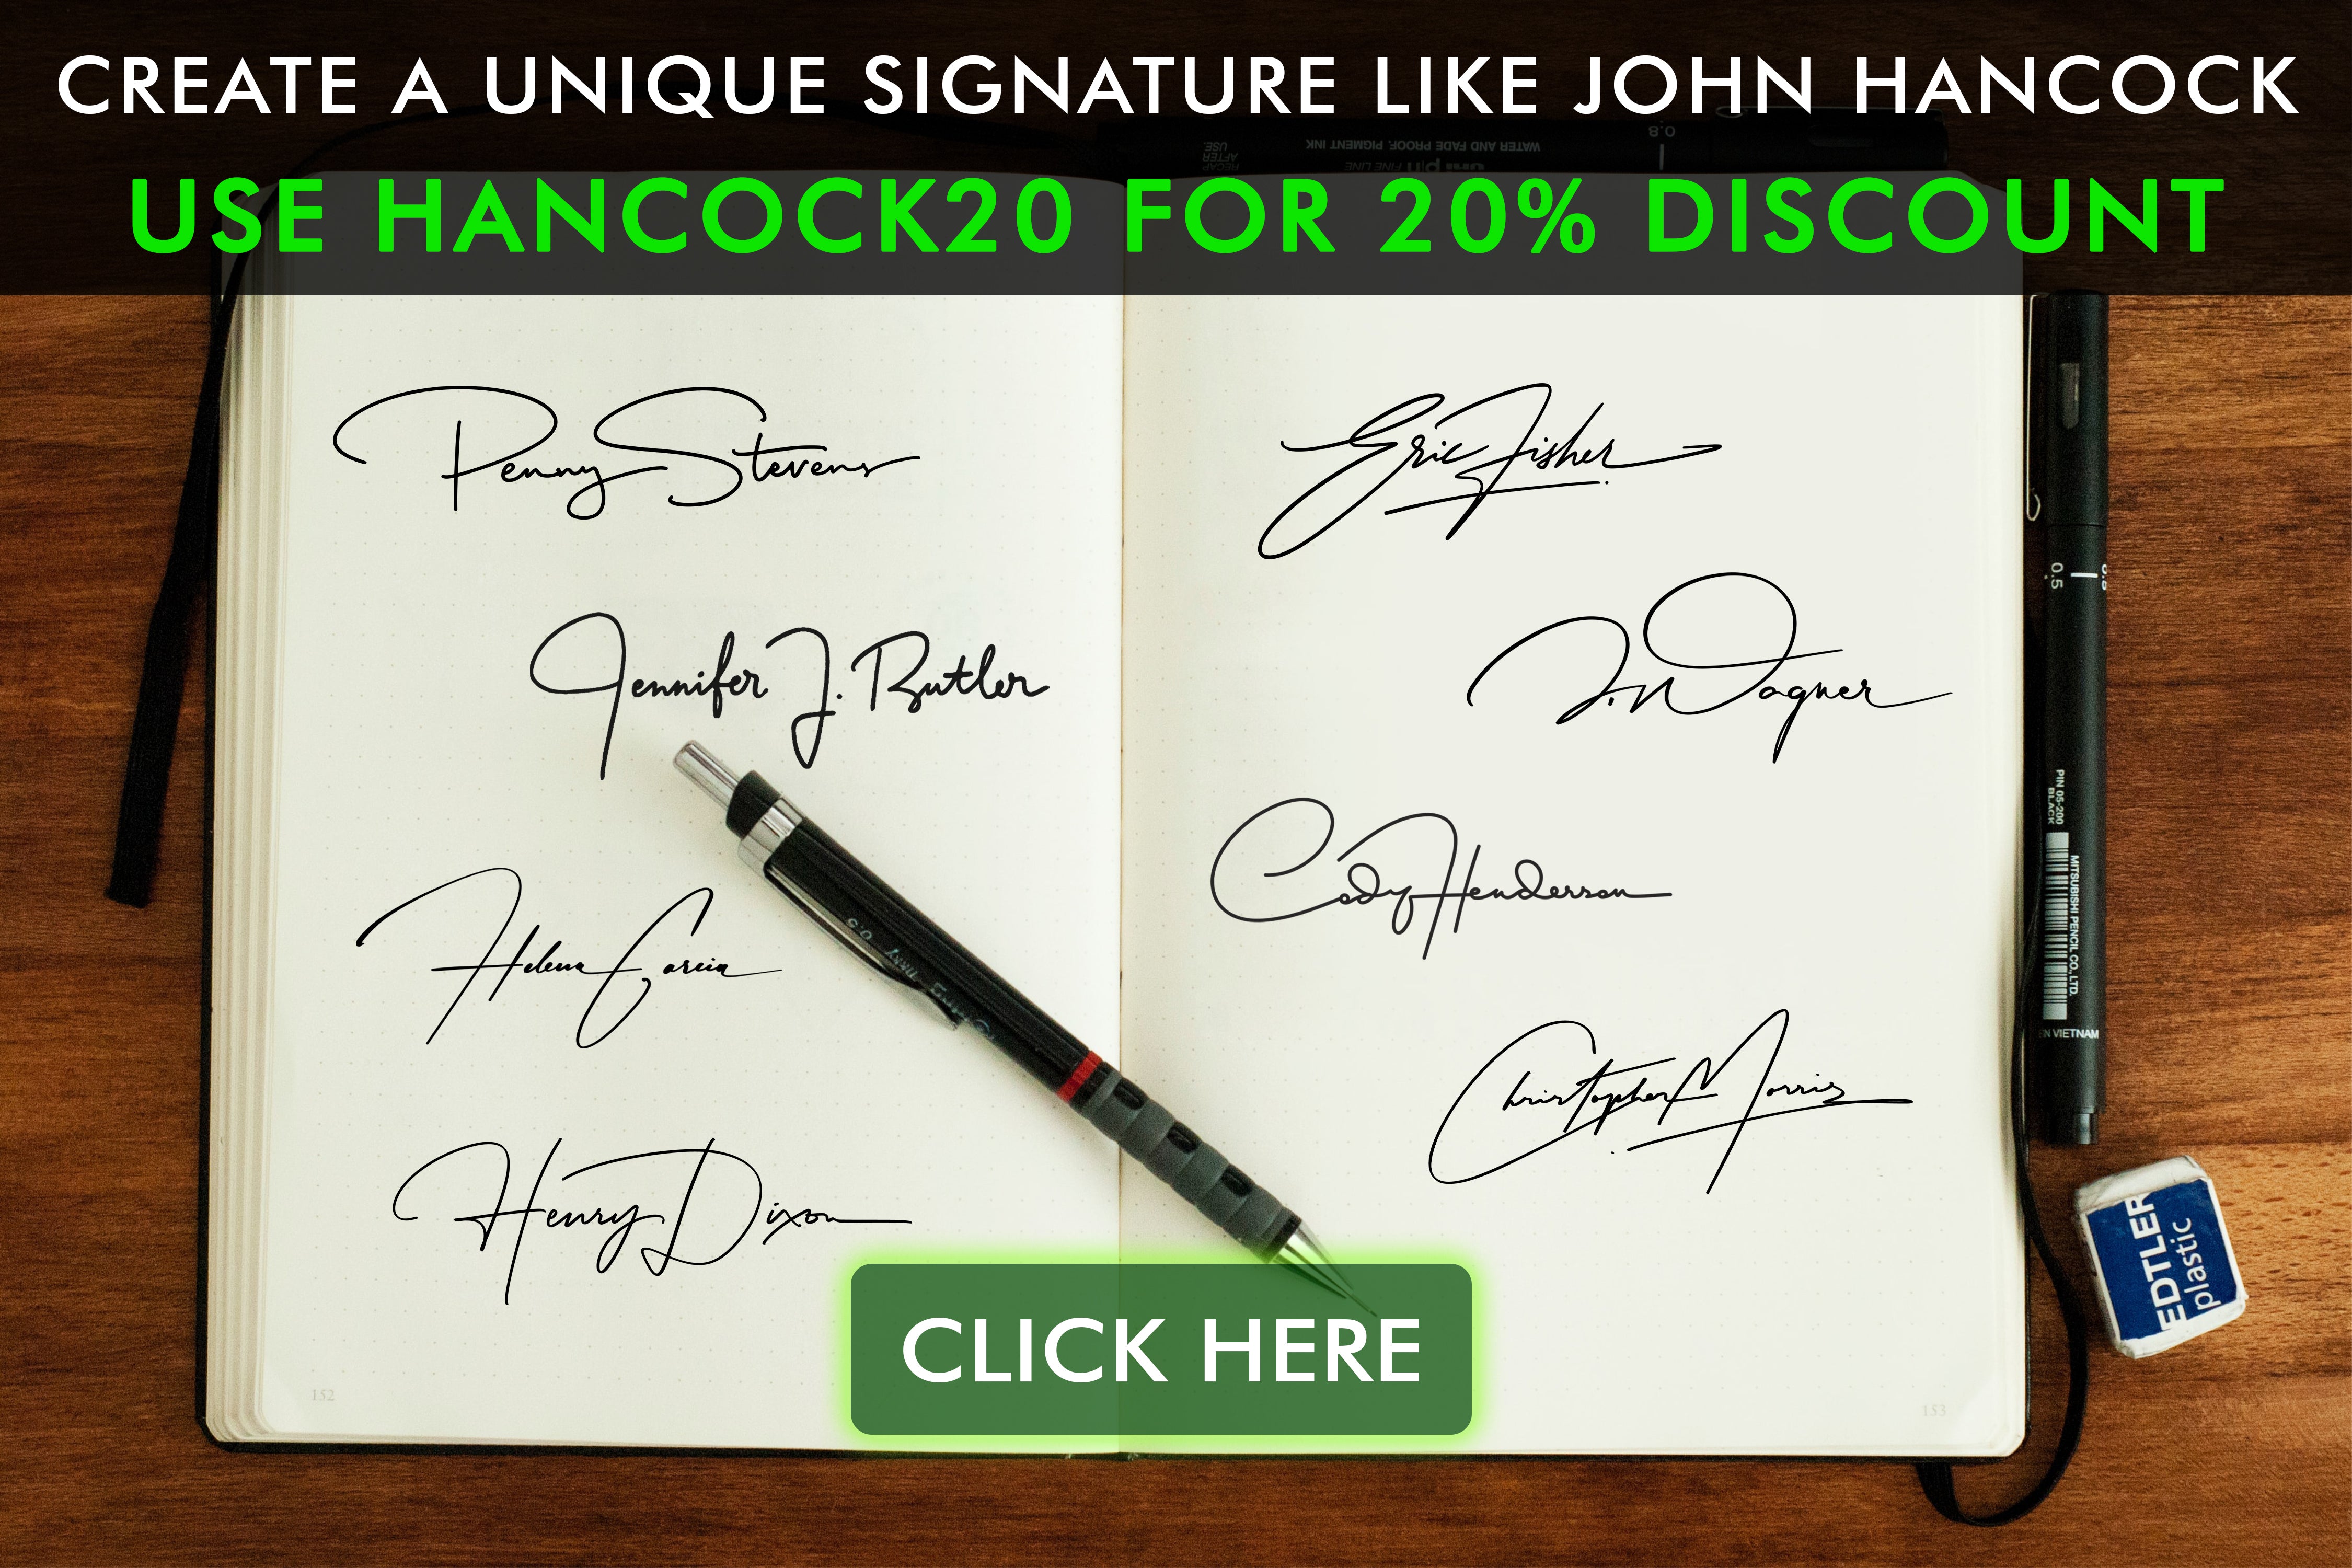 Descubra a história da assinatura de John Hancock e sua influência na história. Leia nosso blog e veja nossa coleção inspirada nessa assinatura icônica.